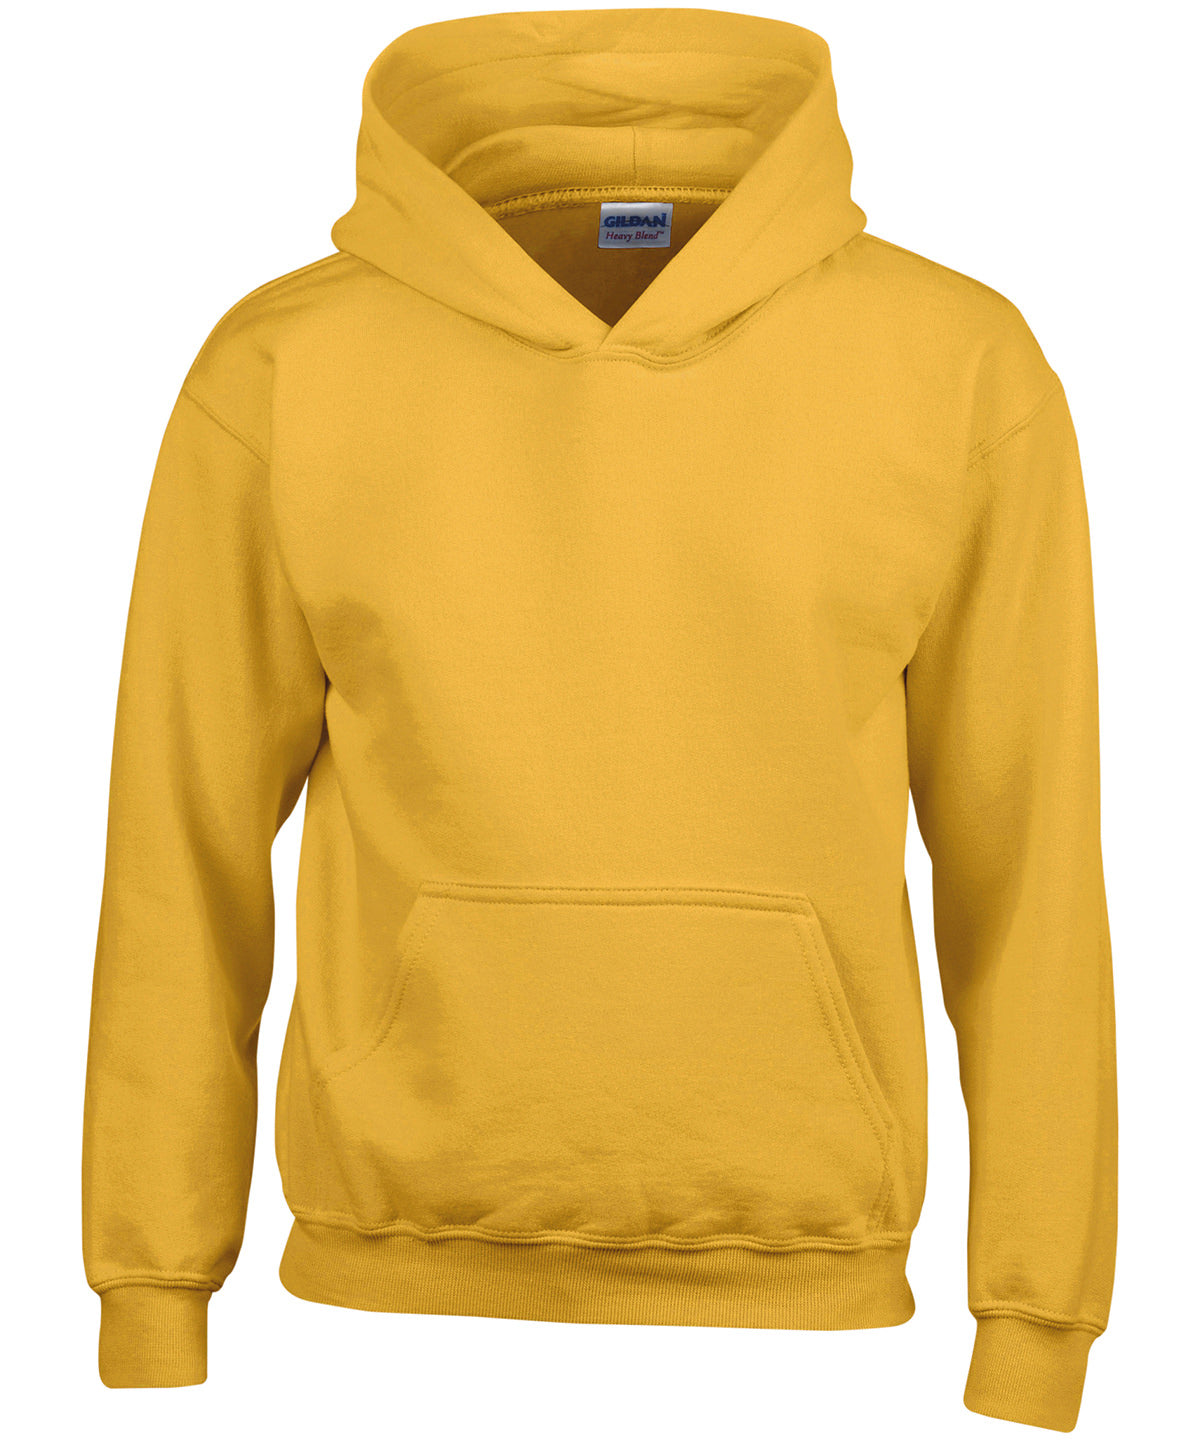 Personalised Hoodies - Black Gildan Heavy Blend™ youth hooded sweatshirt